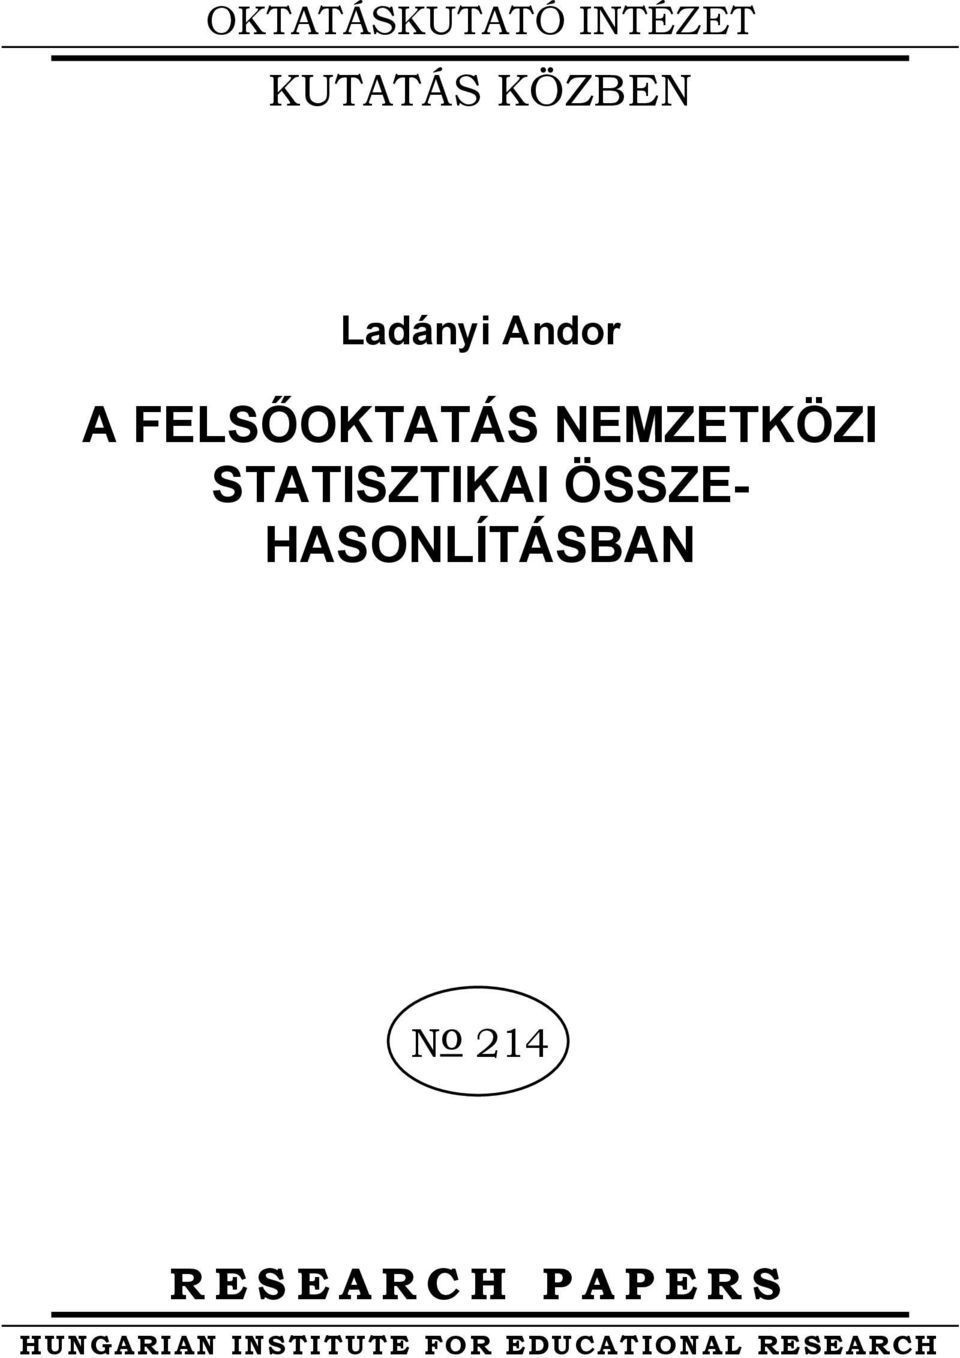 ÖSSZE HASONLÍTÁSBAN No 214 RESEARCH PAPERS